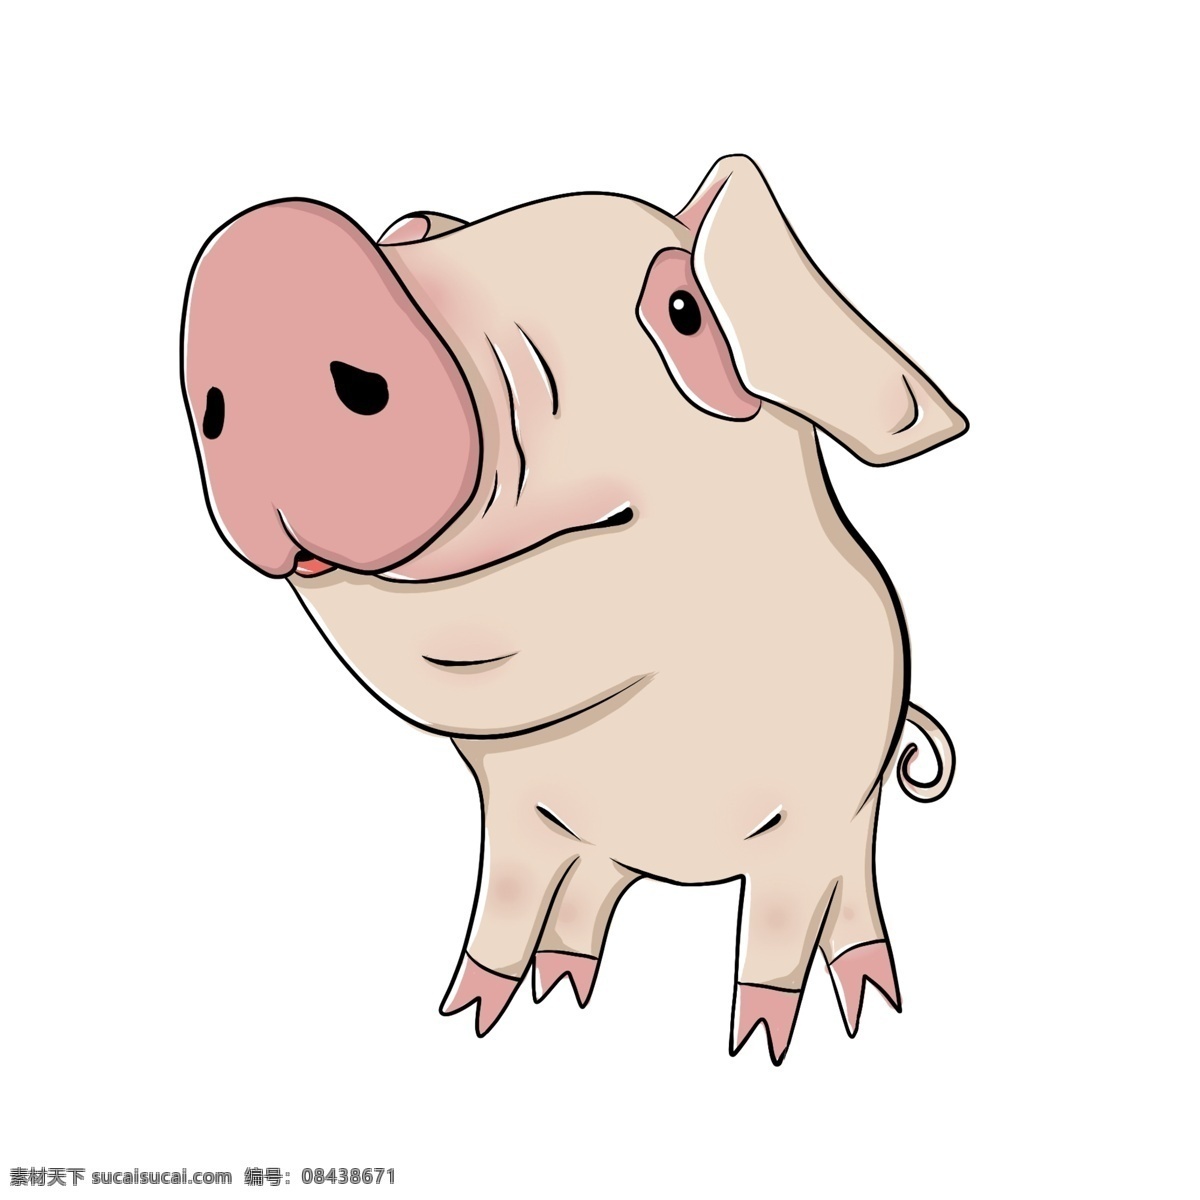 花眼 折 耳朵 大鼻子 小 猪 猪头 可爱 小猪猪 粉红鼻子 手绘 卡通 动物 猪年 憨态可掬 好玩 仰头 小尾巴